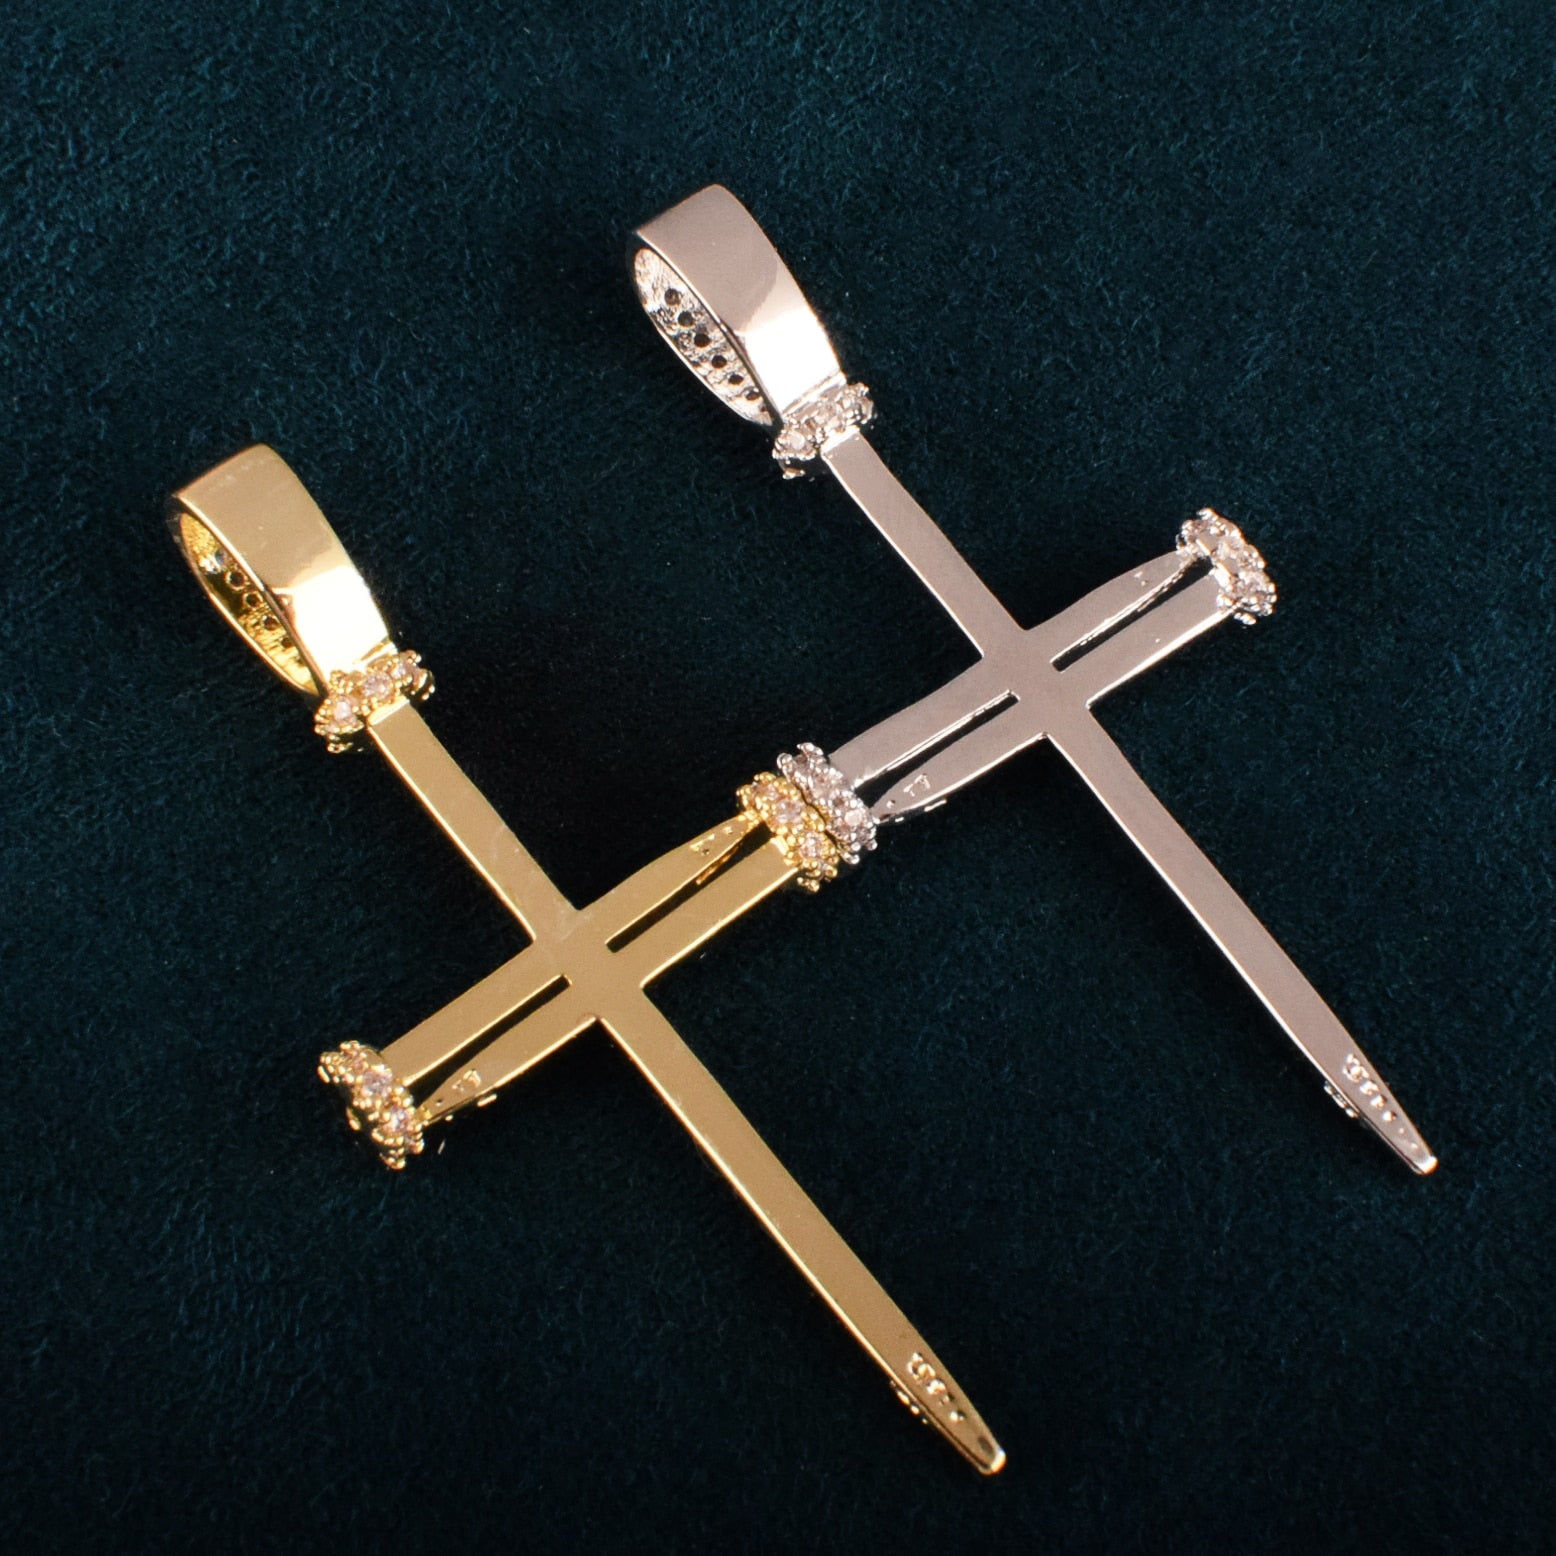 Nail Cross Pendant | Unique Cross Necklaces